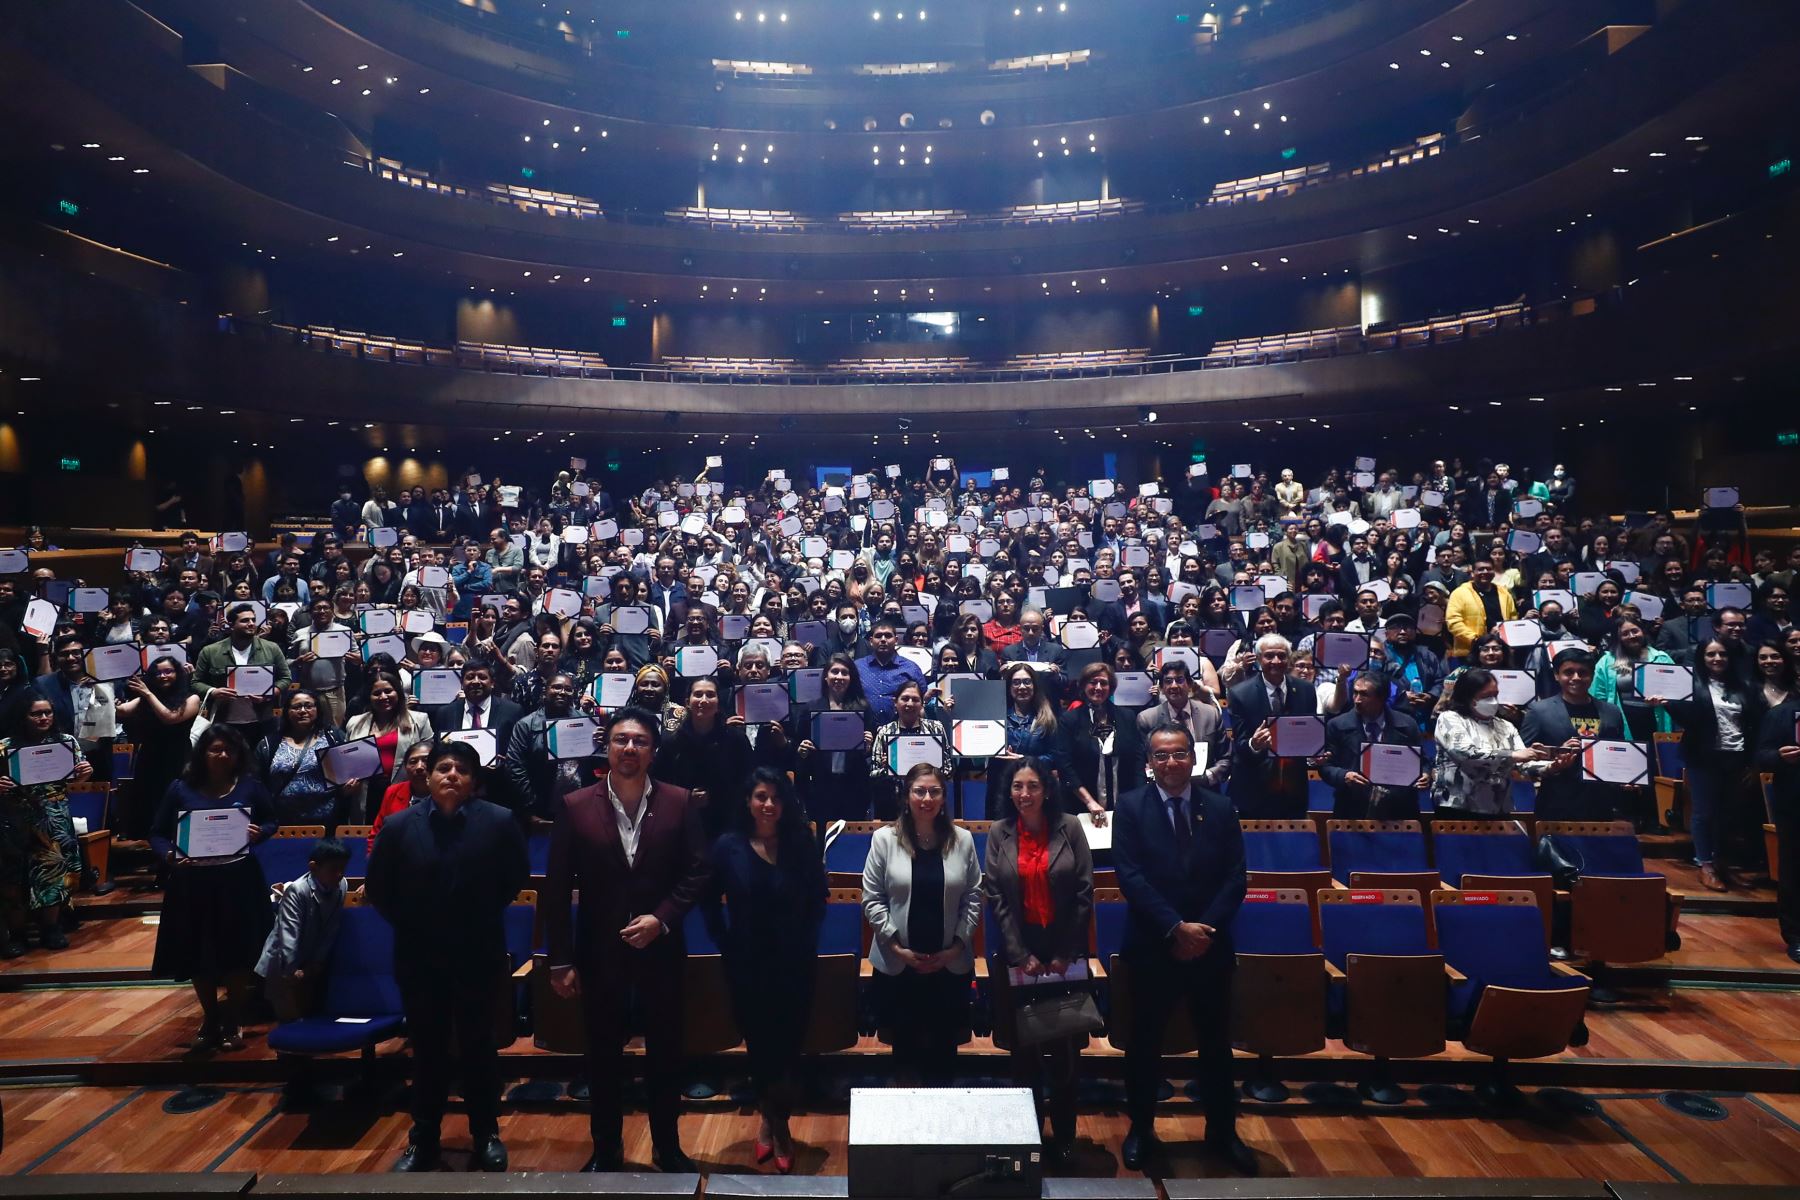 En el Gran Teatro Nacional el Ministerio de Cultura realizó ceremonia de premiación de los proyectos ganadores de estímulos económicos 2022 para las artes escénicas, artes visuales, música, libro y fomento de la lectura, cine y audiovisual. Foto: ANDINA/MINCUL